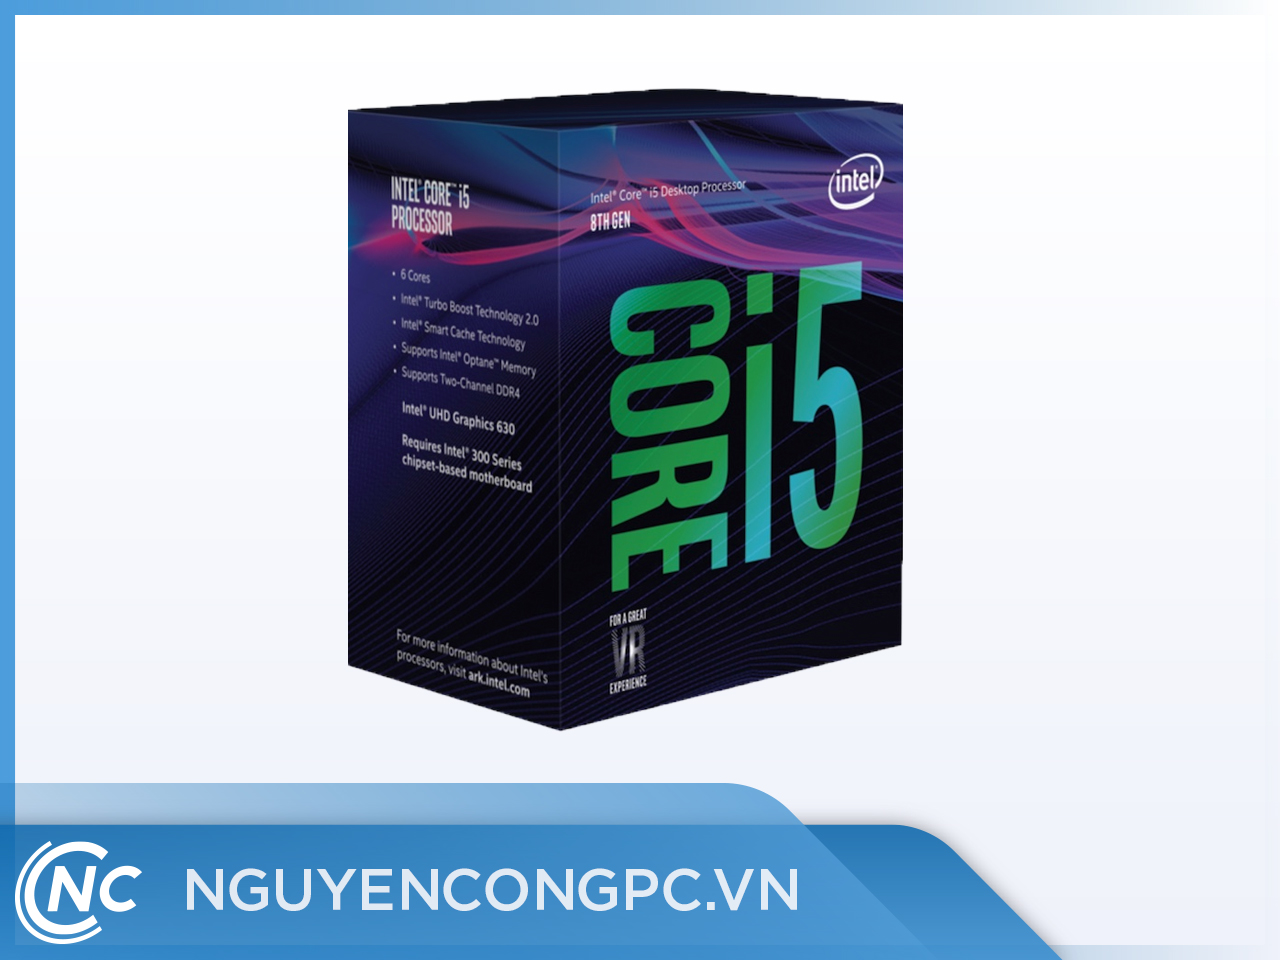 Intel Core i5-8400. Intel Core i5-8600. Intel Core i5-8400 lga1151 v2, 6 x 2800 МГЦ. 8600k. Интел коре i5 8400